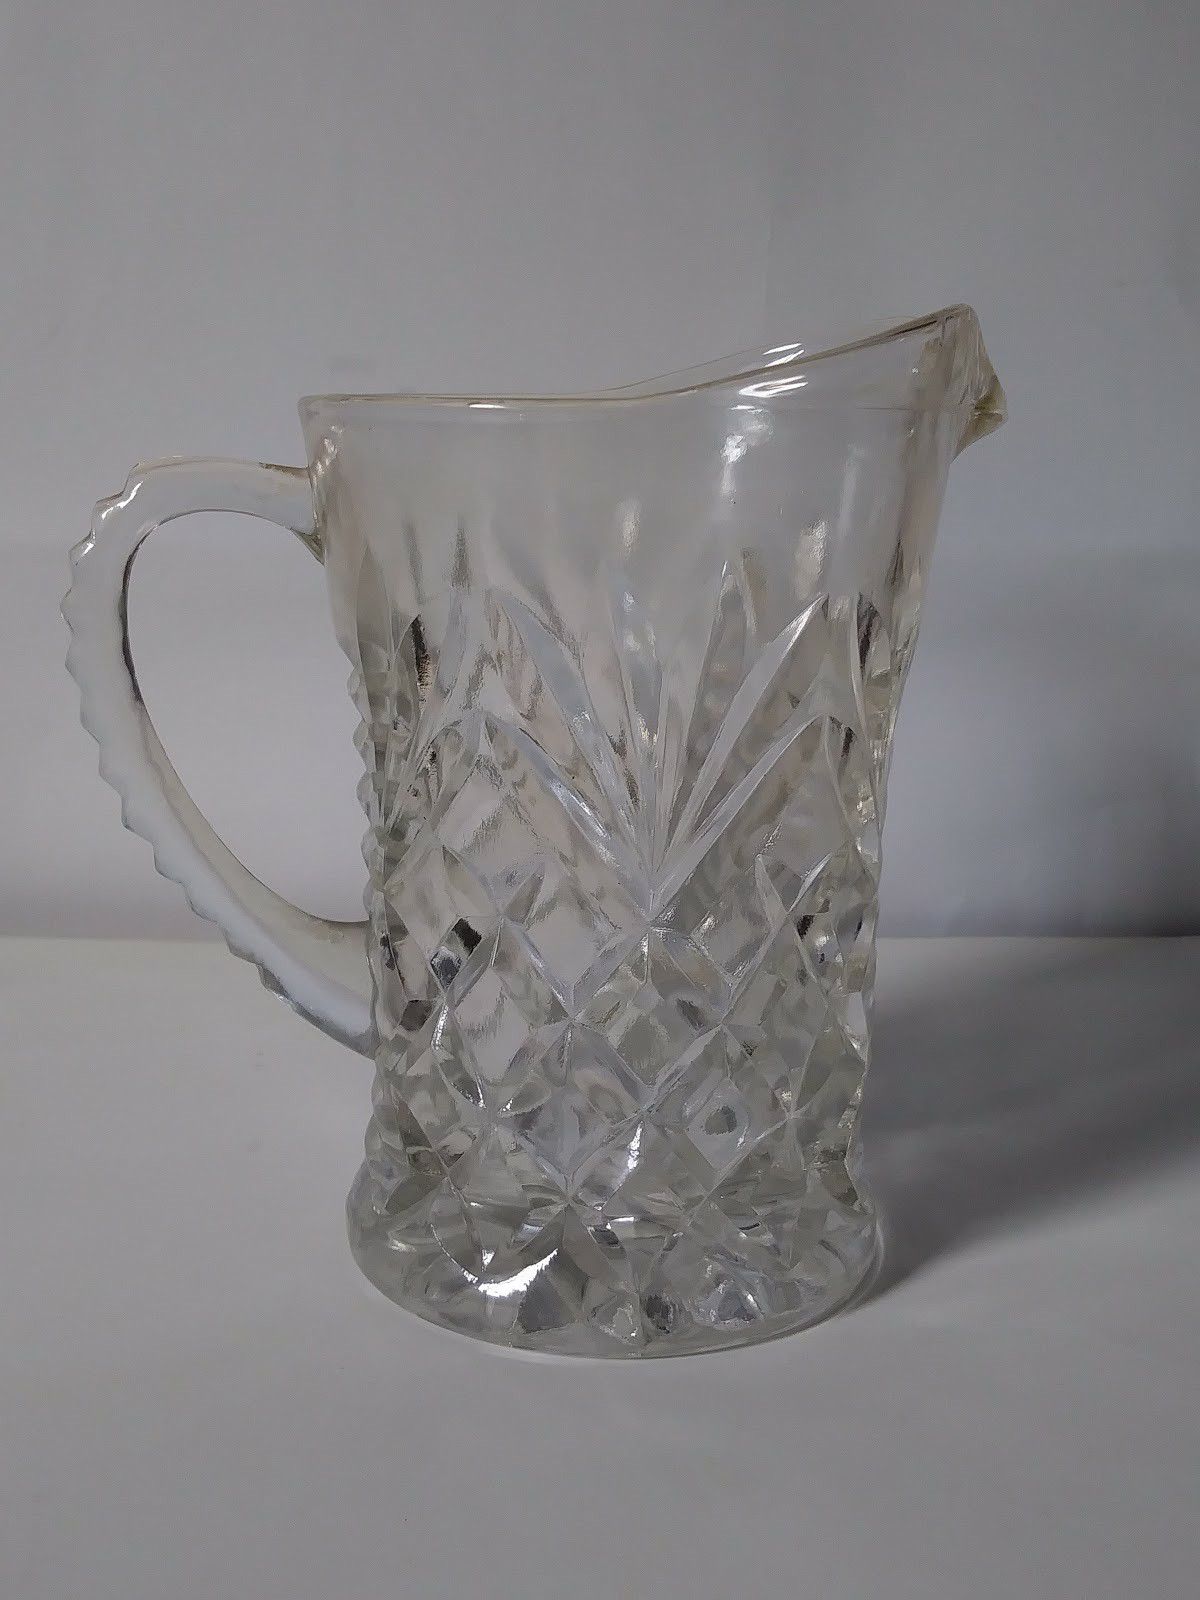 Rare vintage Pressed Glass 5" Mini Beer Pitcher Drink Mug